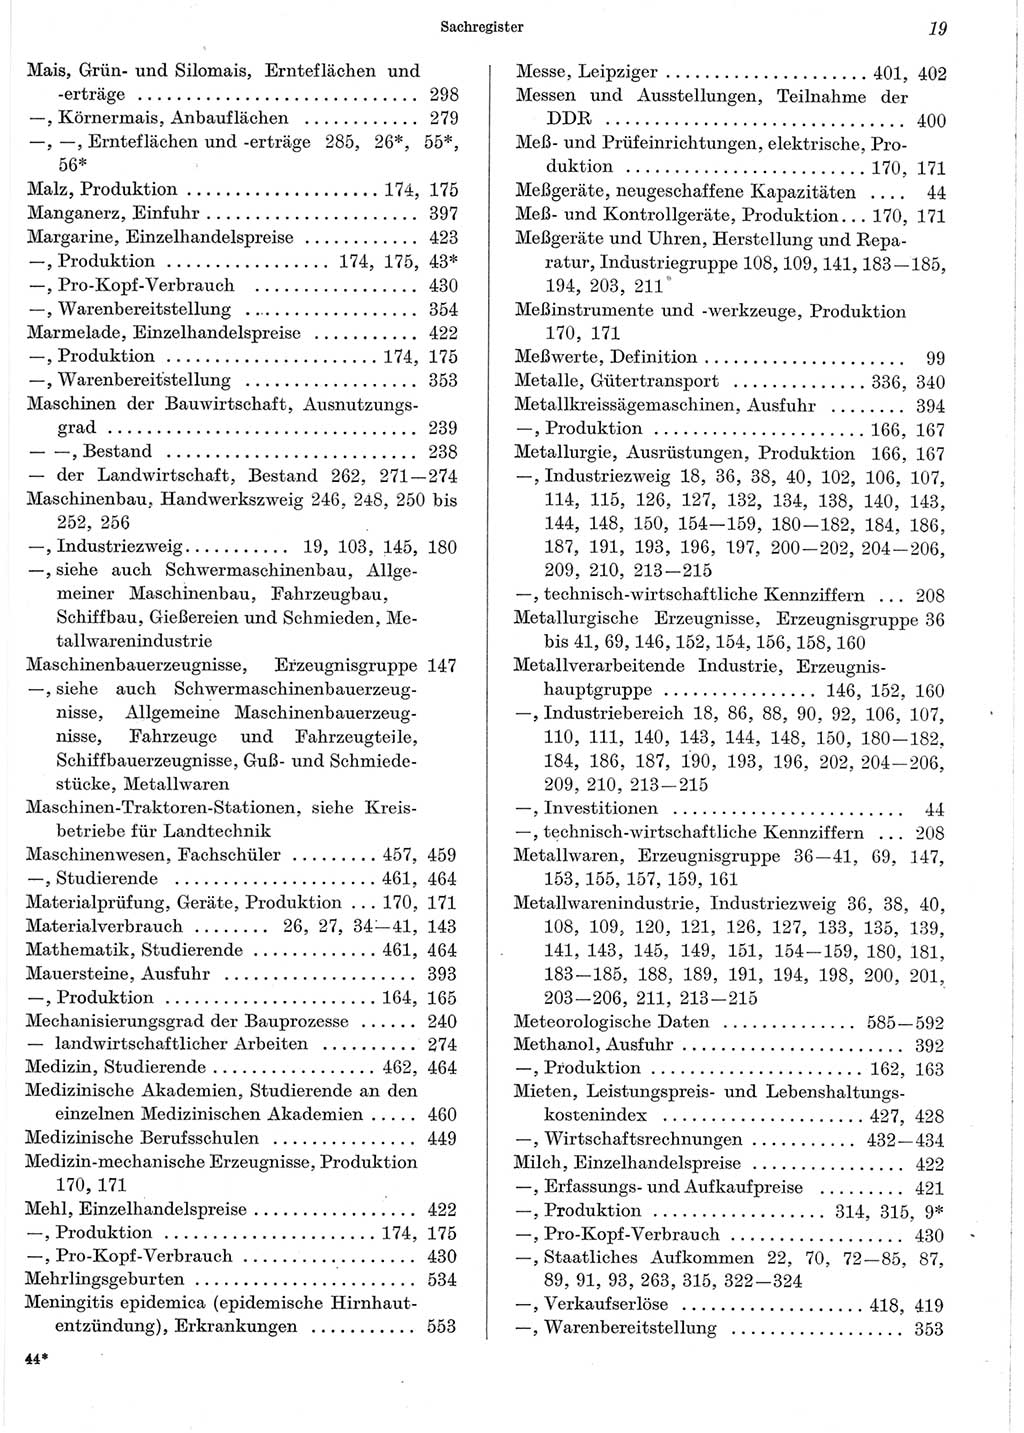 Statistisches Jahrbuch der Deutschen Demokratischen Republik (DDR) 1965, Seite 19 (Stat. Jb. DDR 1965, S. 19)